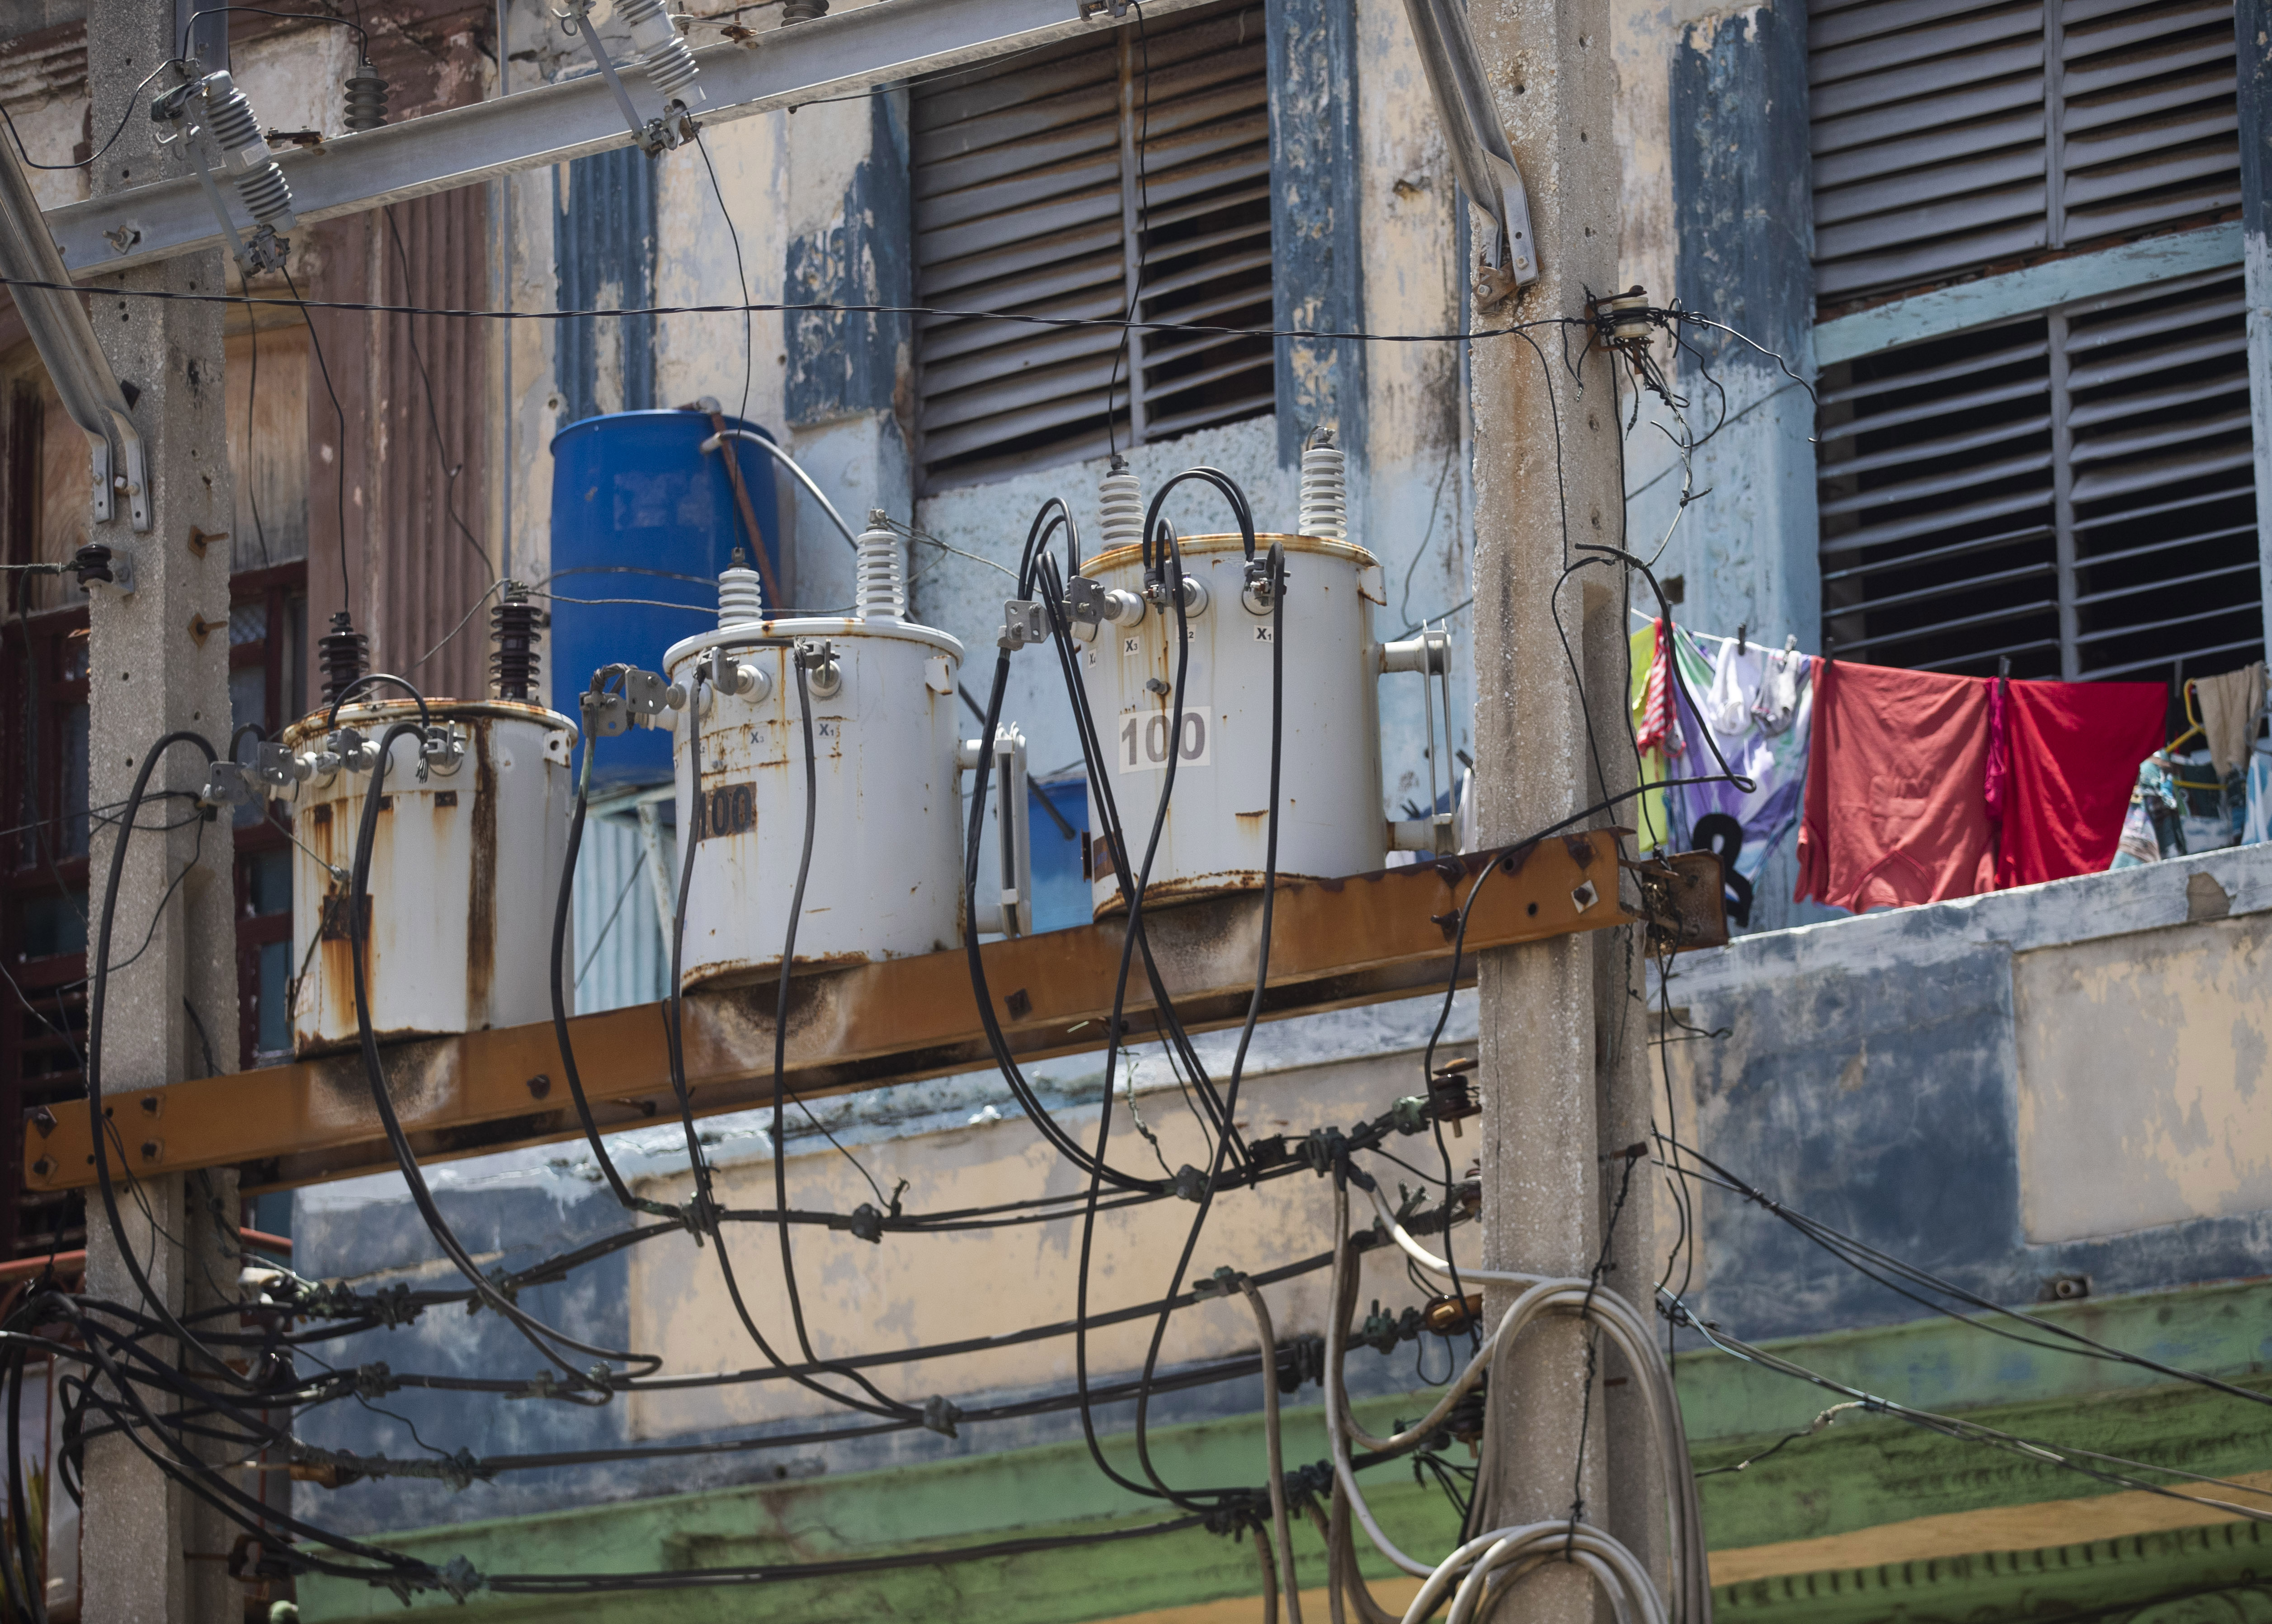 ¿Los milagros existen? Estatal eléctrica de Cuba no prevé apagones para este #19Dic